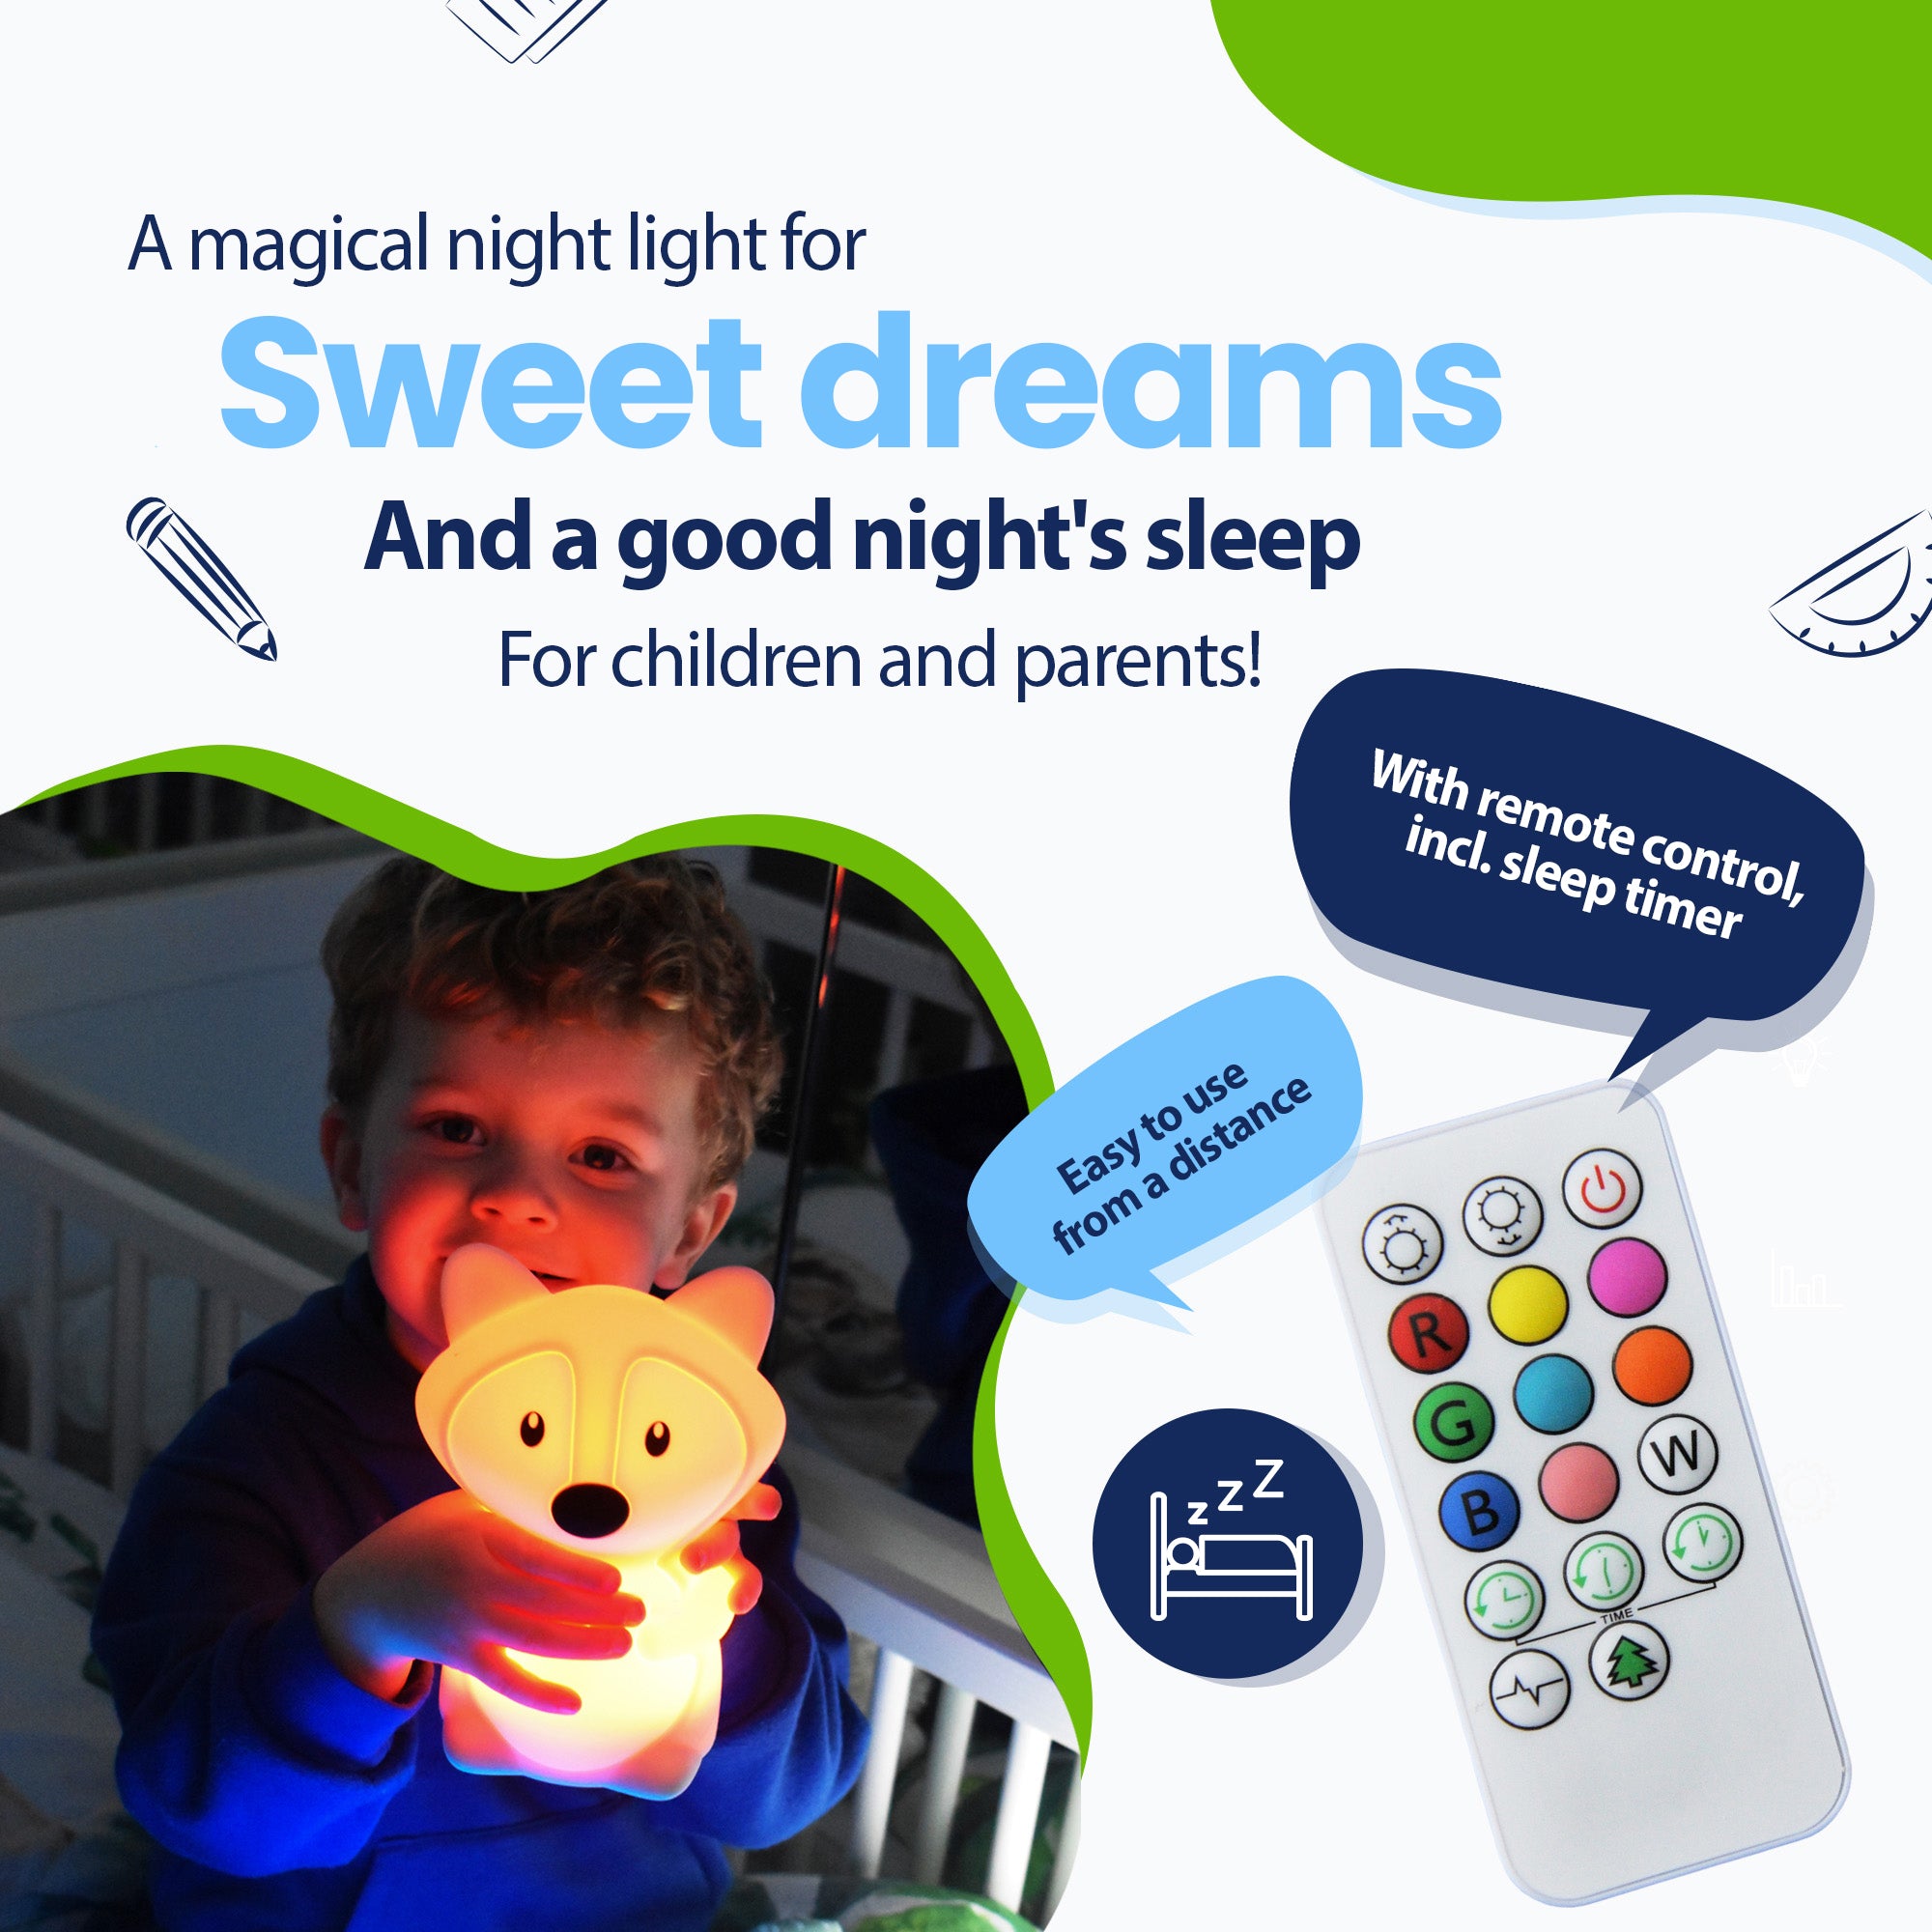 Uma luz noturna mágica para sonhos agradáveis ​​e uma noite de sono saudável para crianças e pais - com controle remoto incluindo temporizador - facilmente à distância